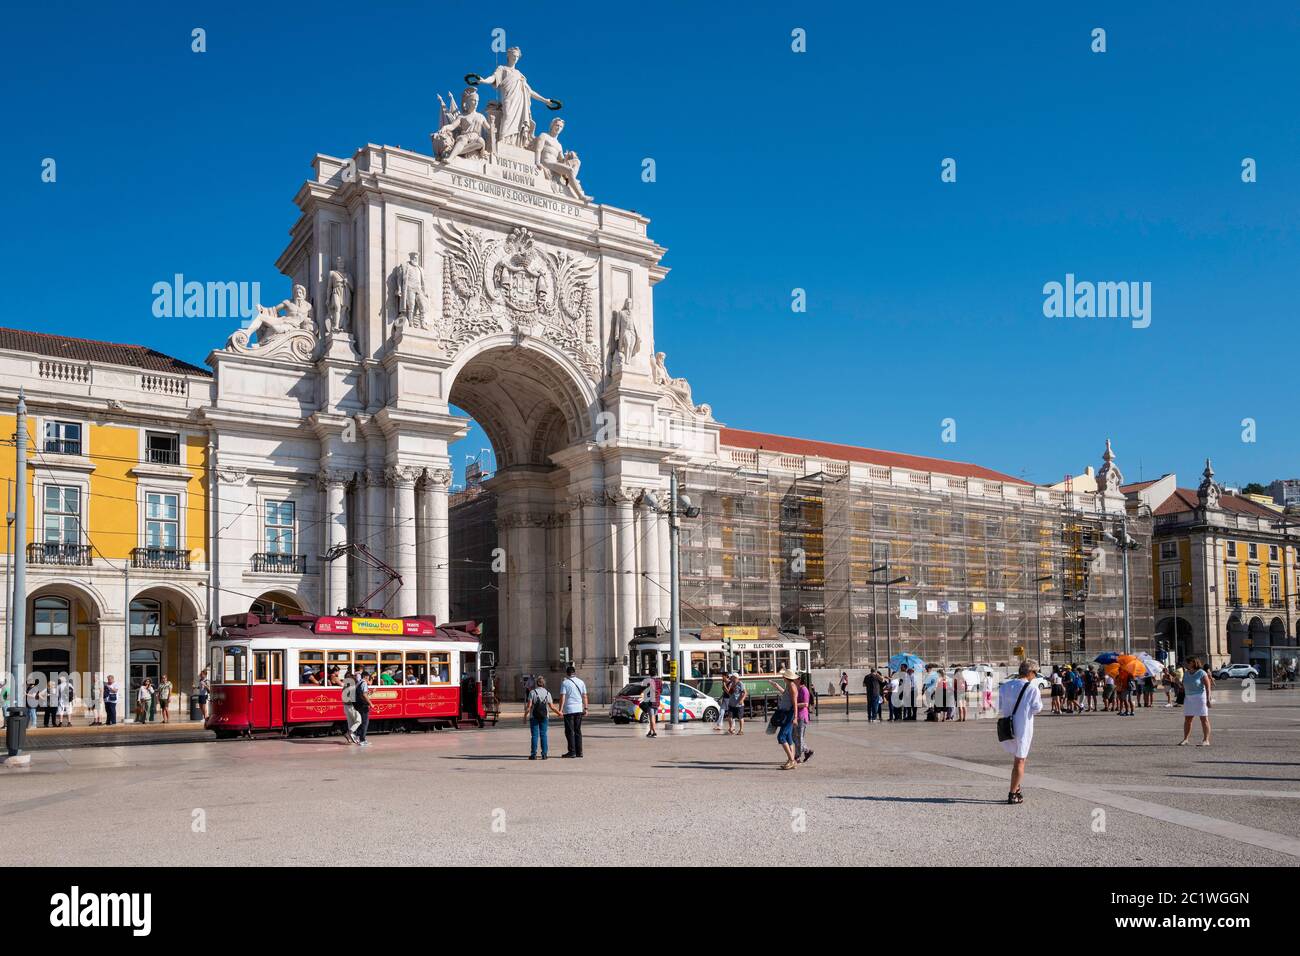 The triumphal arch, 'Arco da Rua Augusta' (1873), dominates the Praça do Comércio ('Commerce Square') in Lisbon, Portugal, Stock Photo